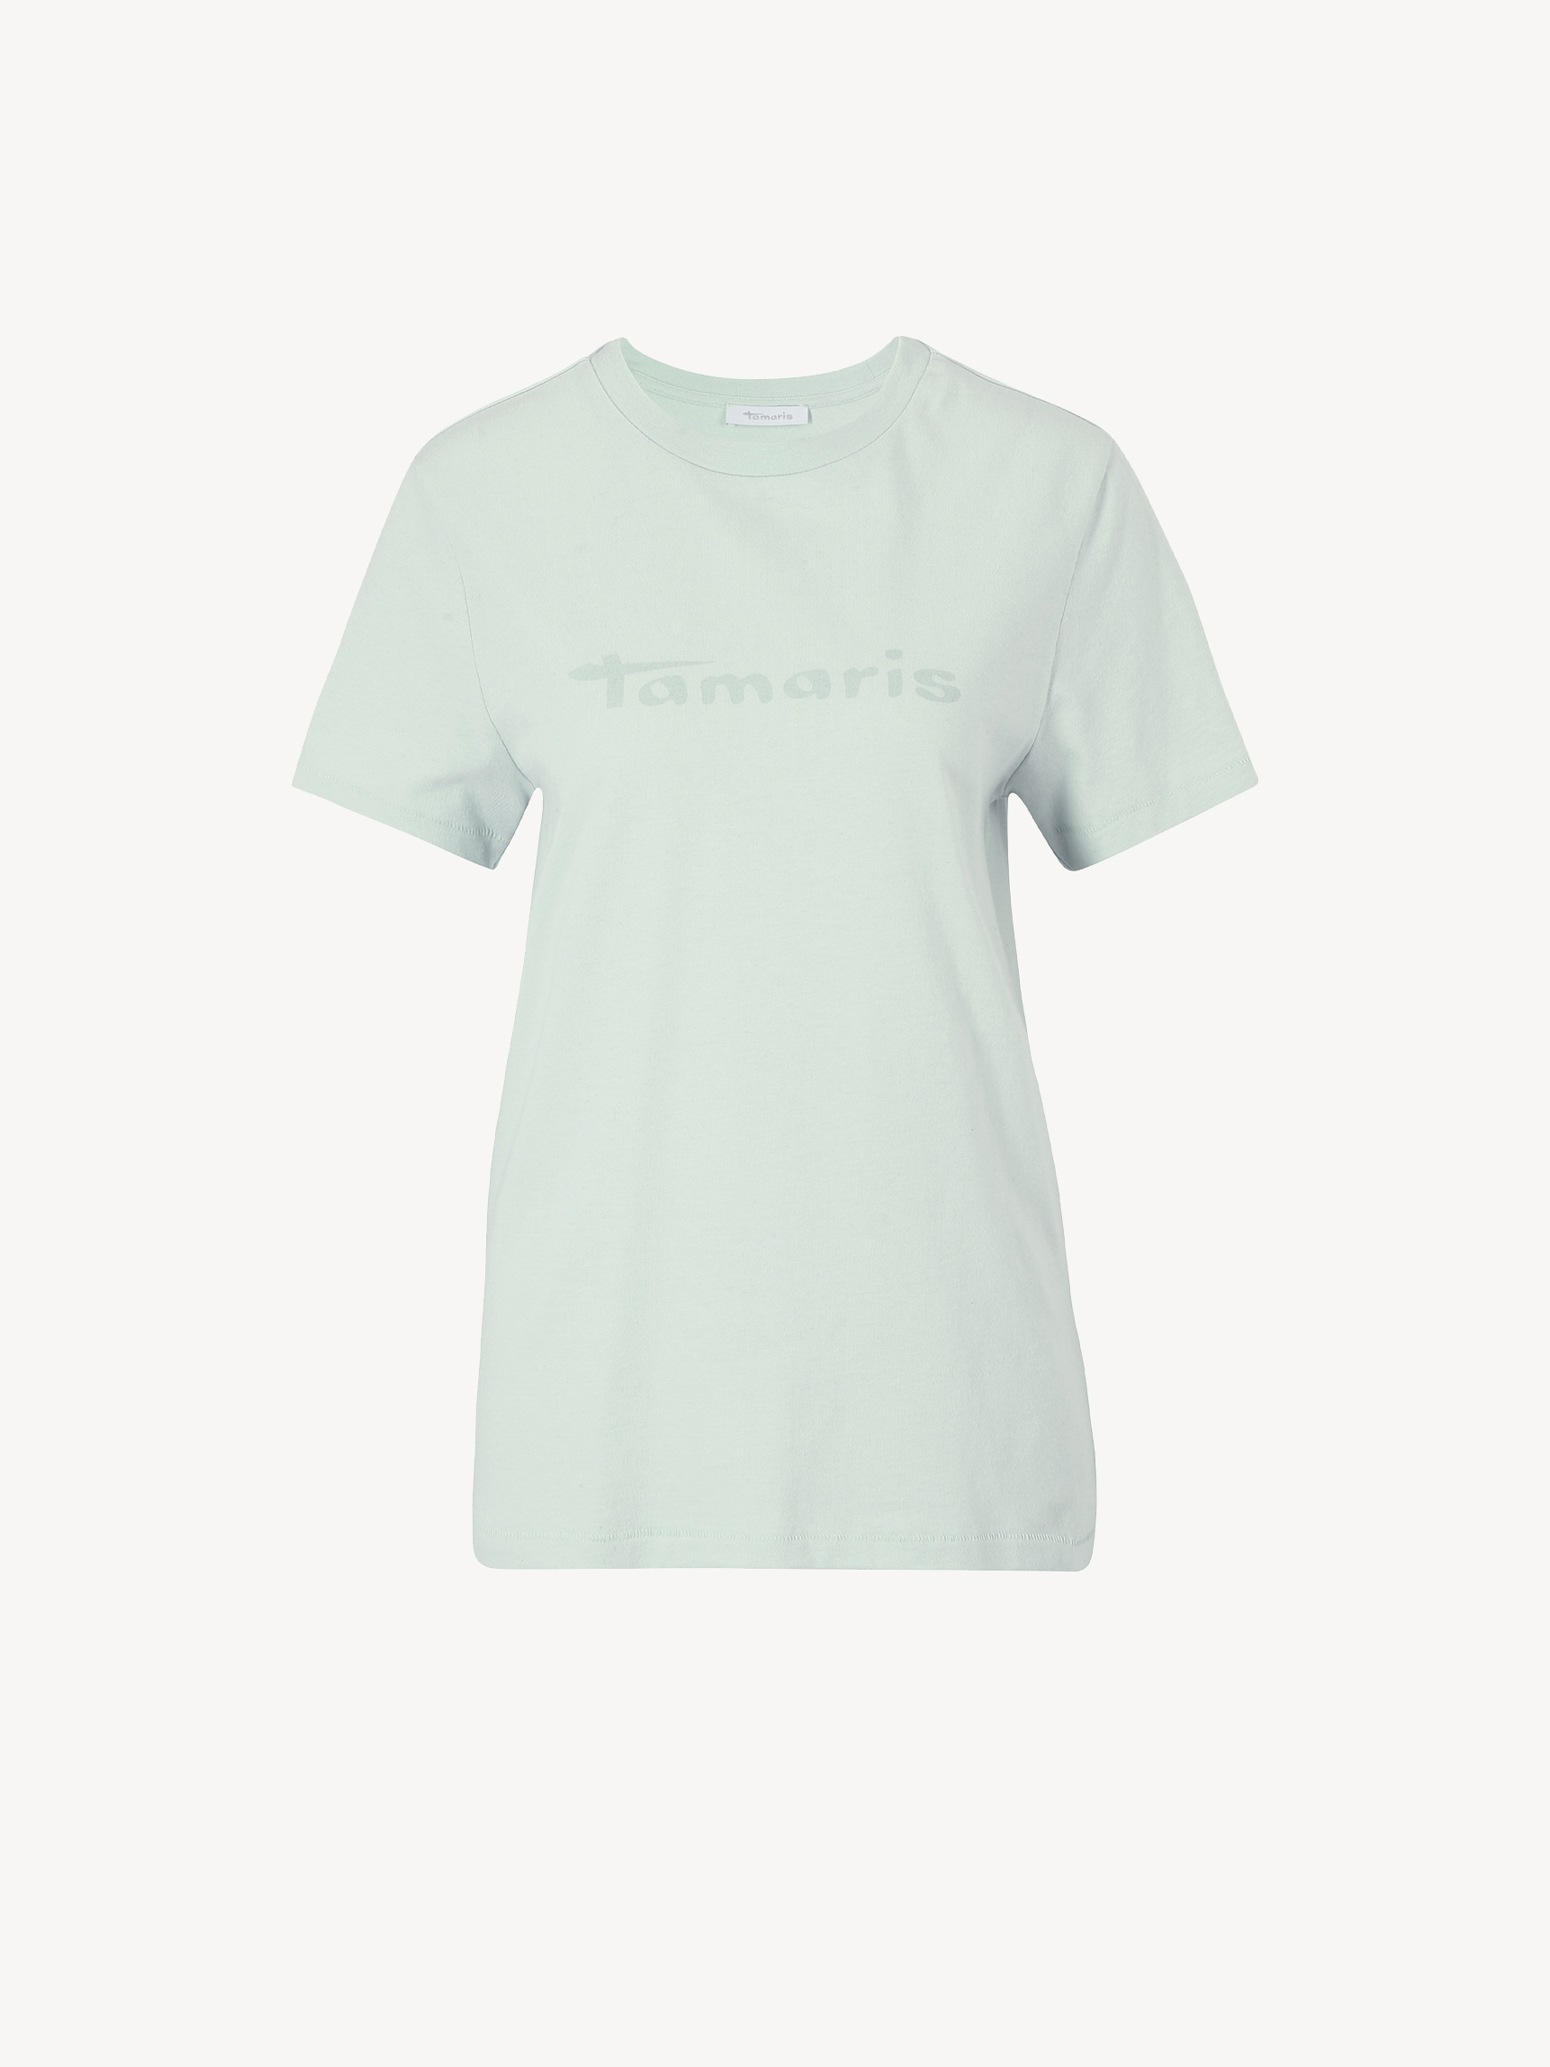 T-Shirt - grün